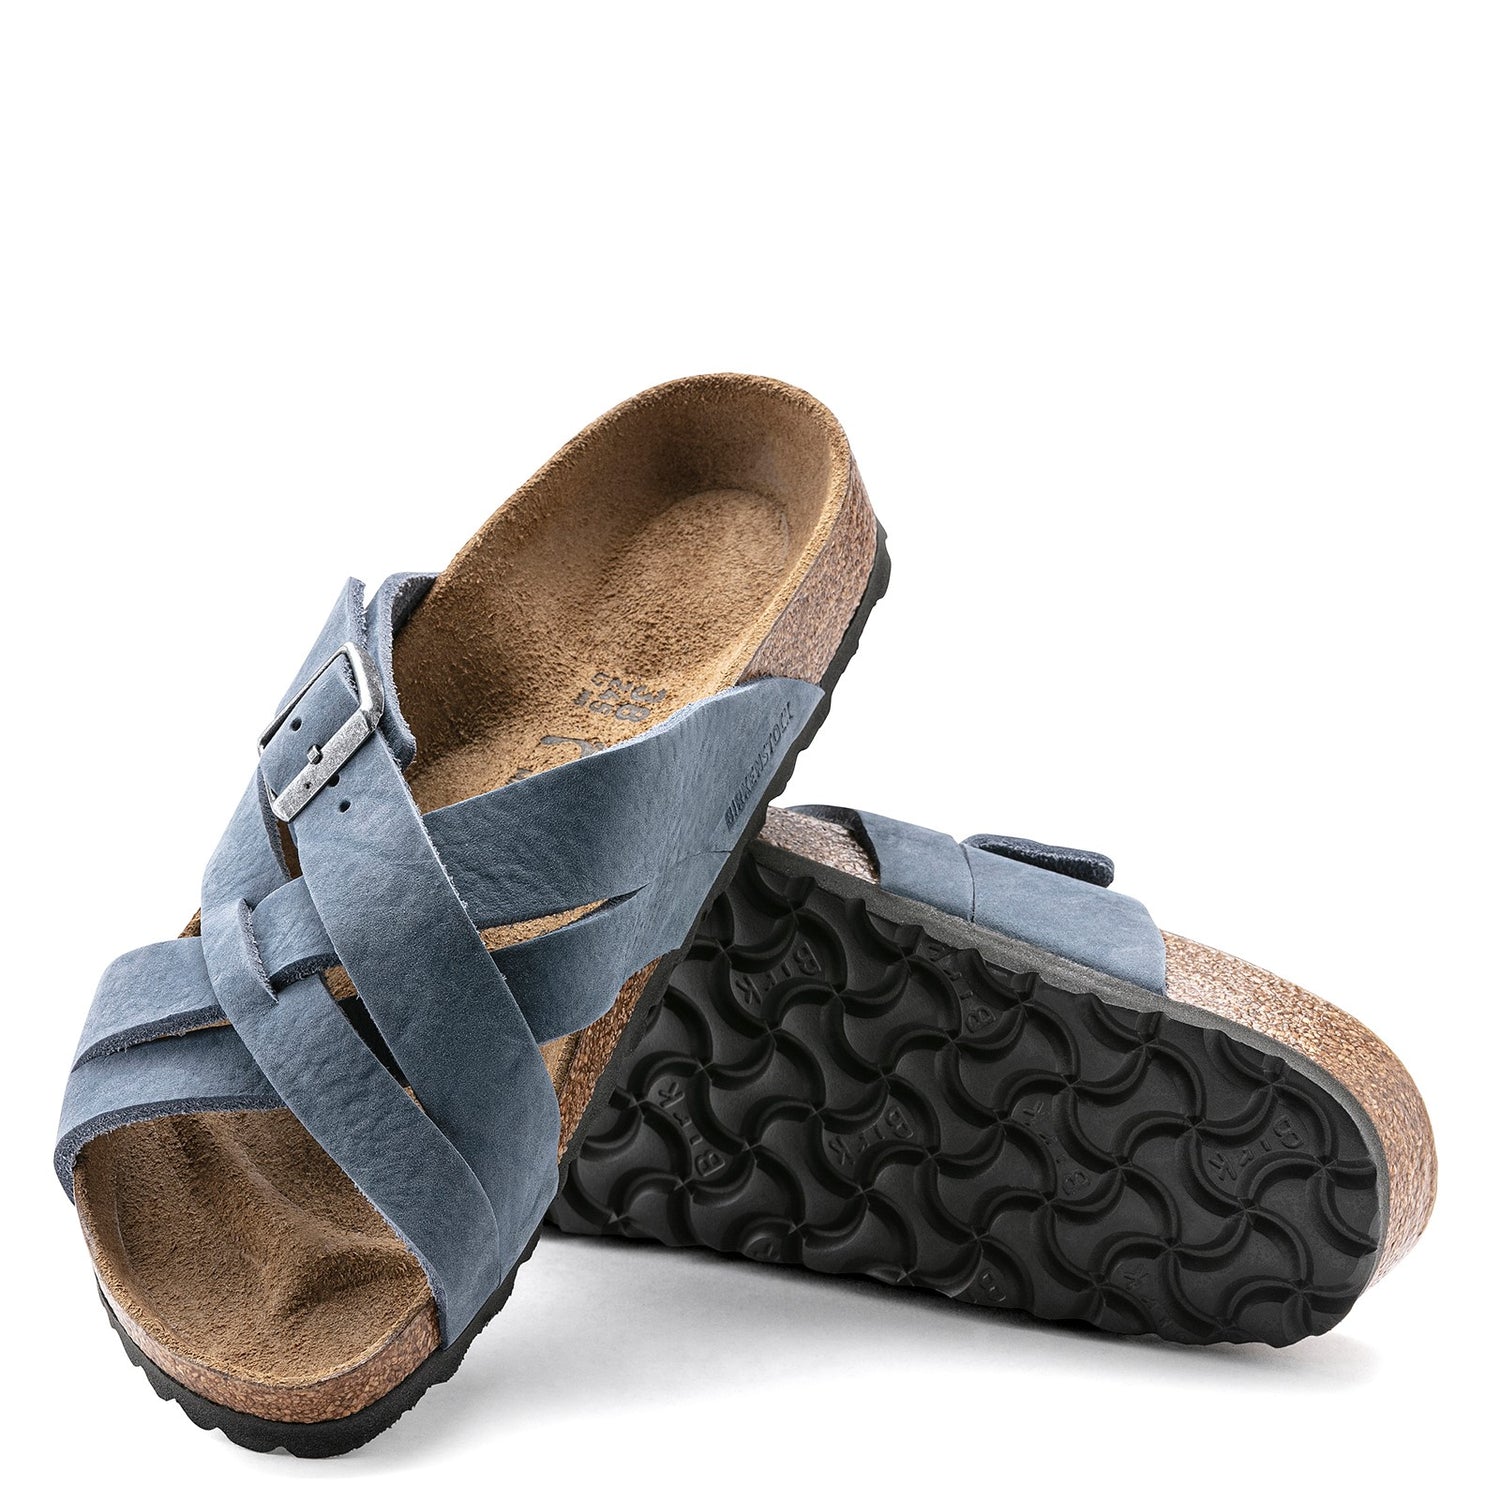 Peltz Shoes  Women's Birkenstock Lugano Sandal - Regular Width DUSTY BLUE 1022 439 R